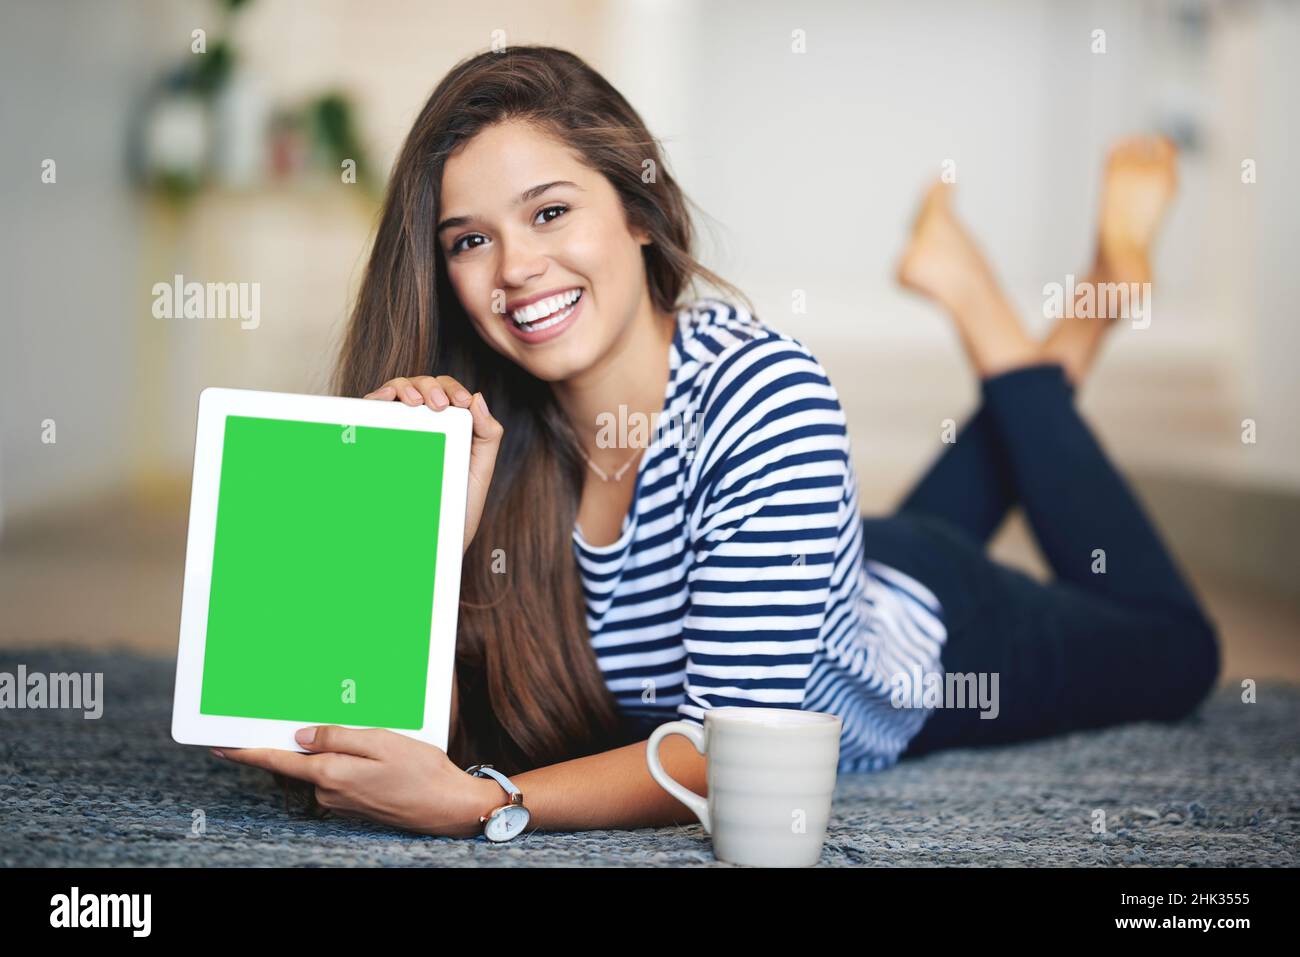 Le meilleur site que vous trouverez jamais.Portrait d'une jeune femme souriante couché sur le sol à la maison tenant une tablette numérique avec un écran couleur clé. Banque D'Images